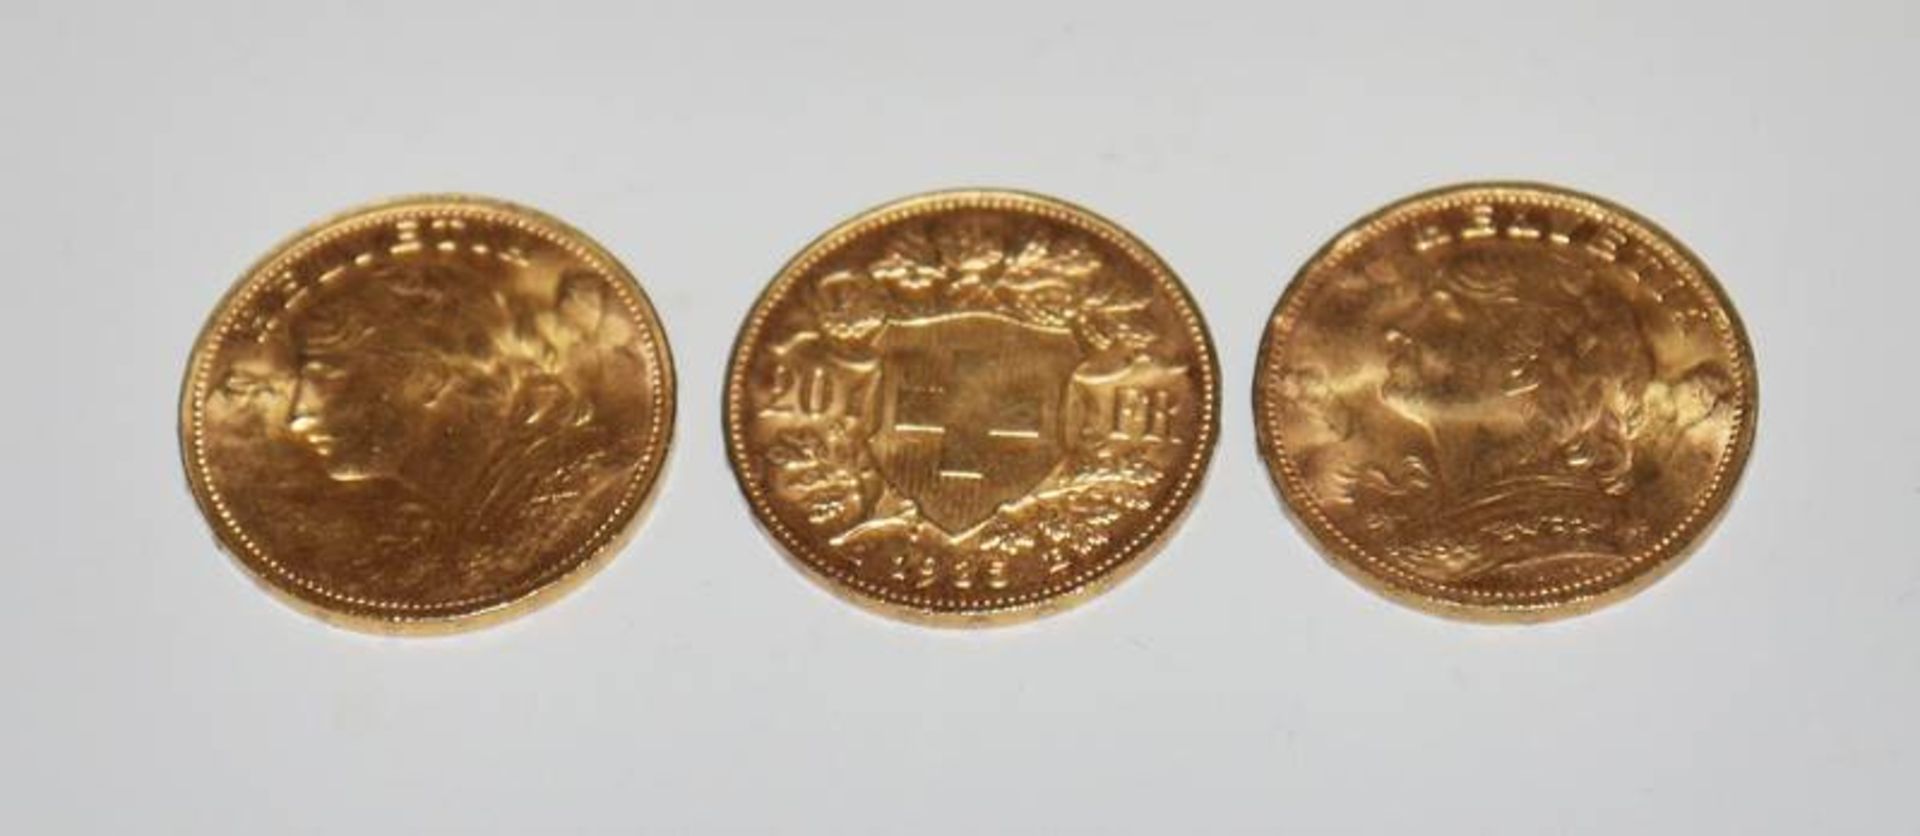 Drei Goldmünzen "Gold Vreneli" 20 Franken Schweiz-Eidgenossenschaft 1935 B